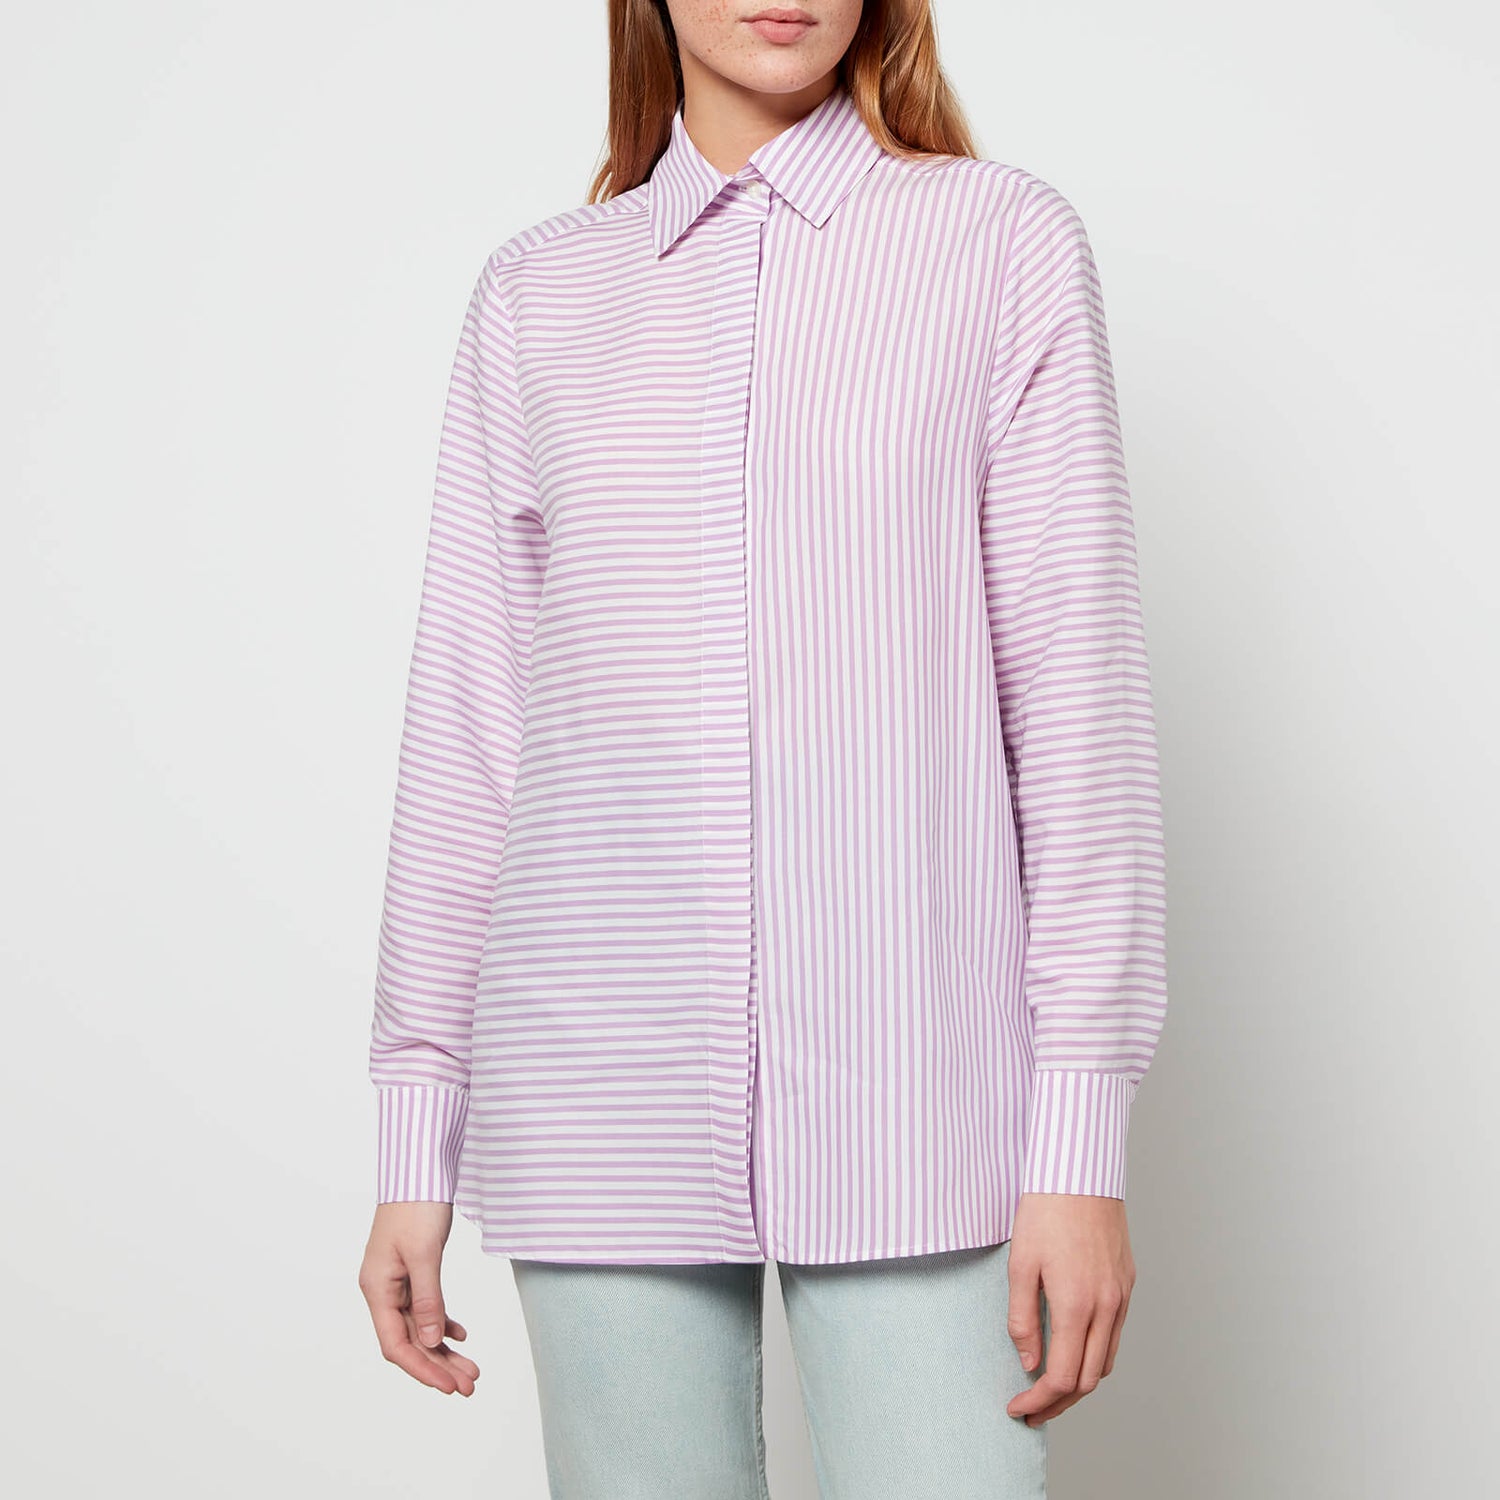 Être Cécile Women's Classic Shirt - Purple White Stripe - 34